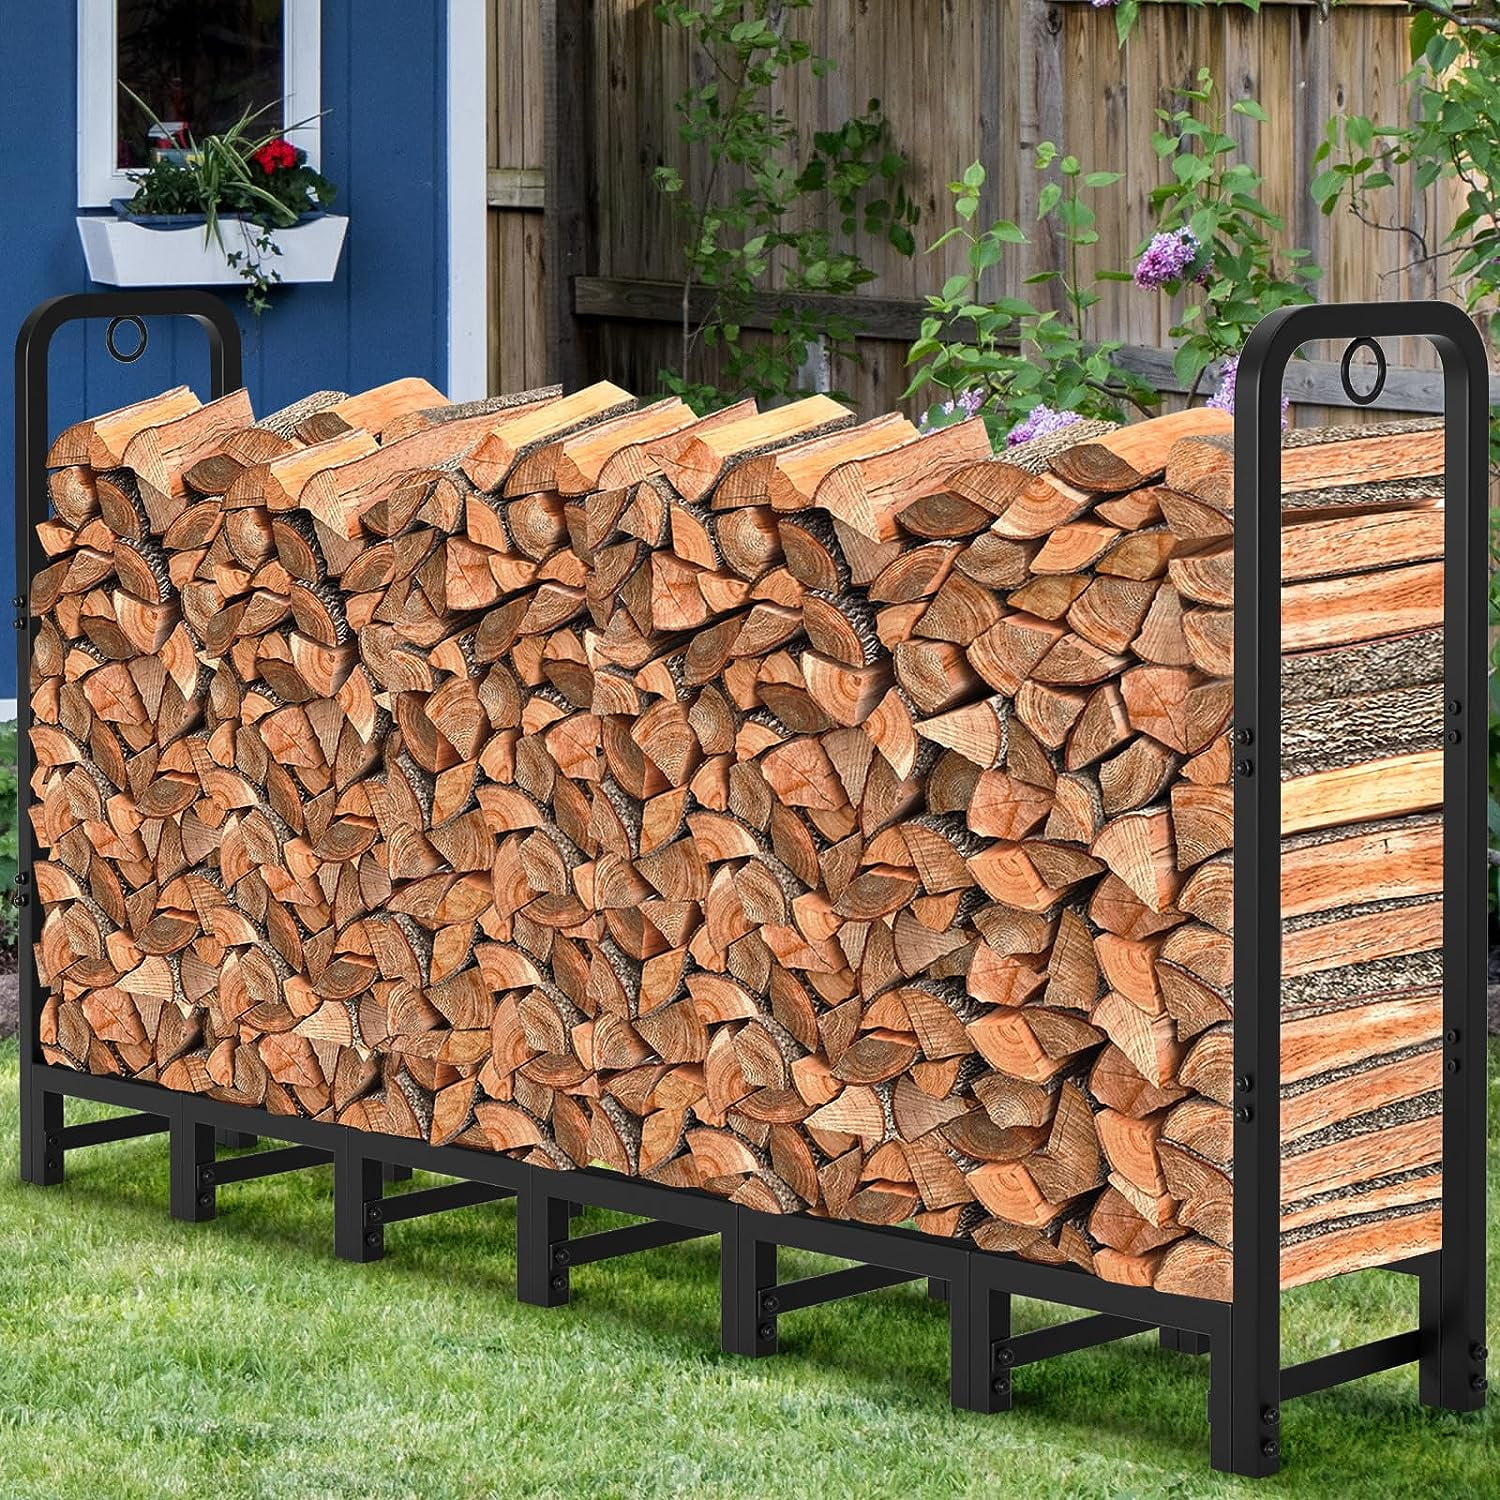 Amagabeli 4ft Firewood Rack Outdoor Log Rack Holder Fireplace